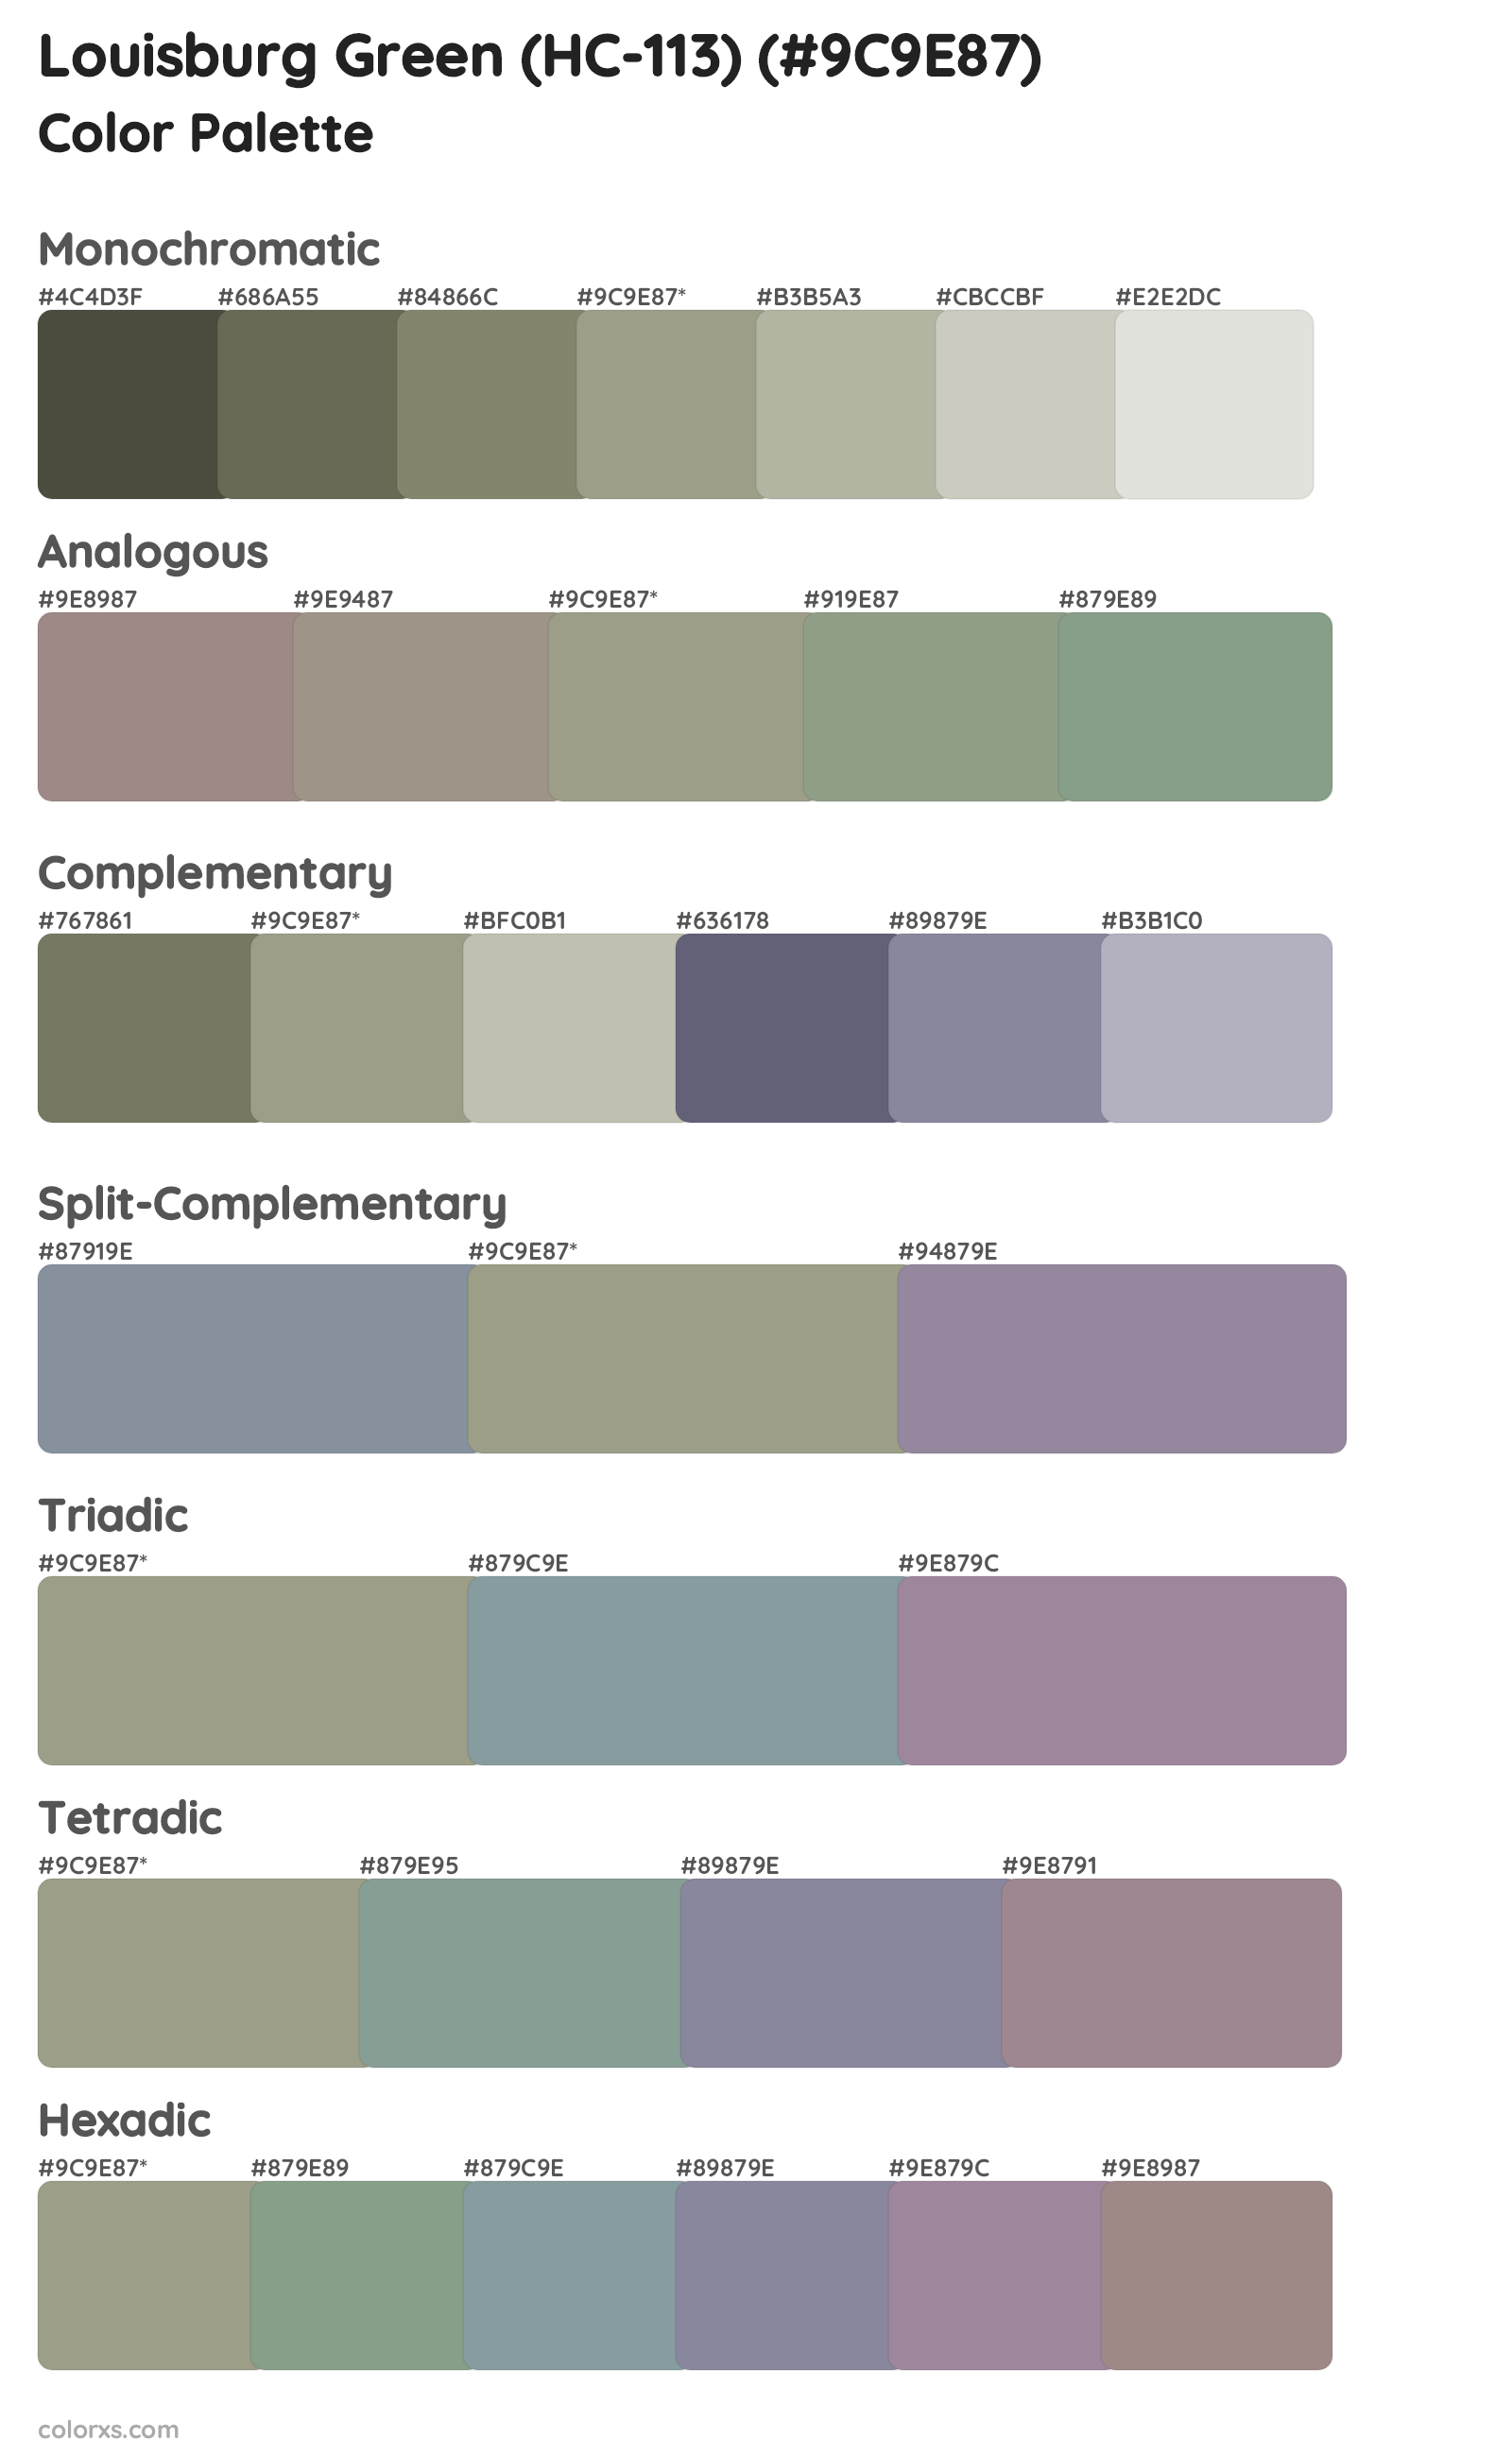 Louisburg Green (HC-113) Color Scheme Palettes